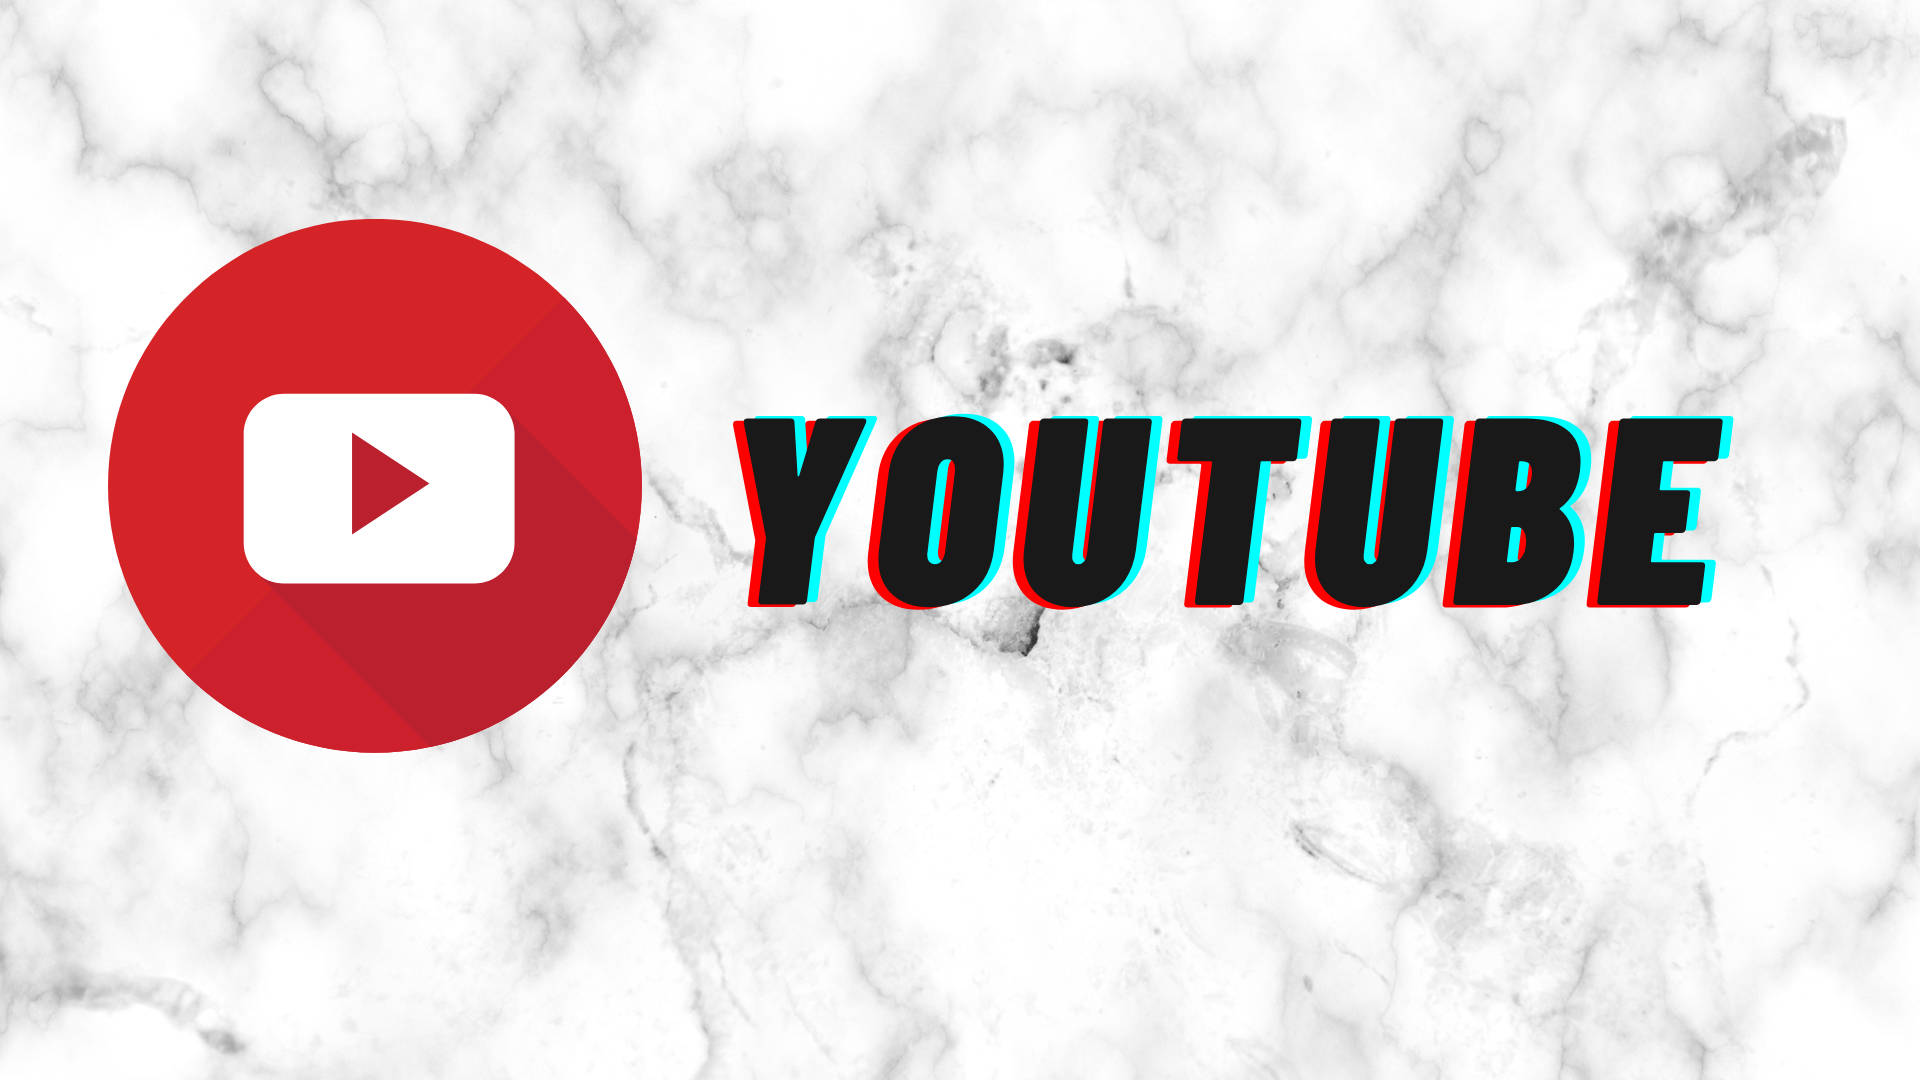 Youtube Logo On White Marble Stone Wallpaper